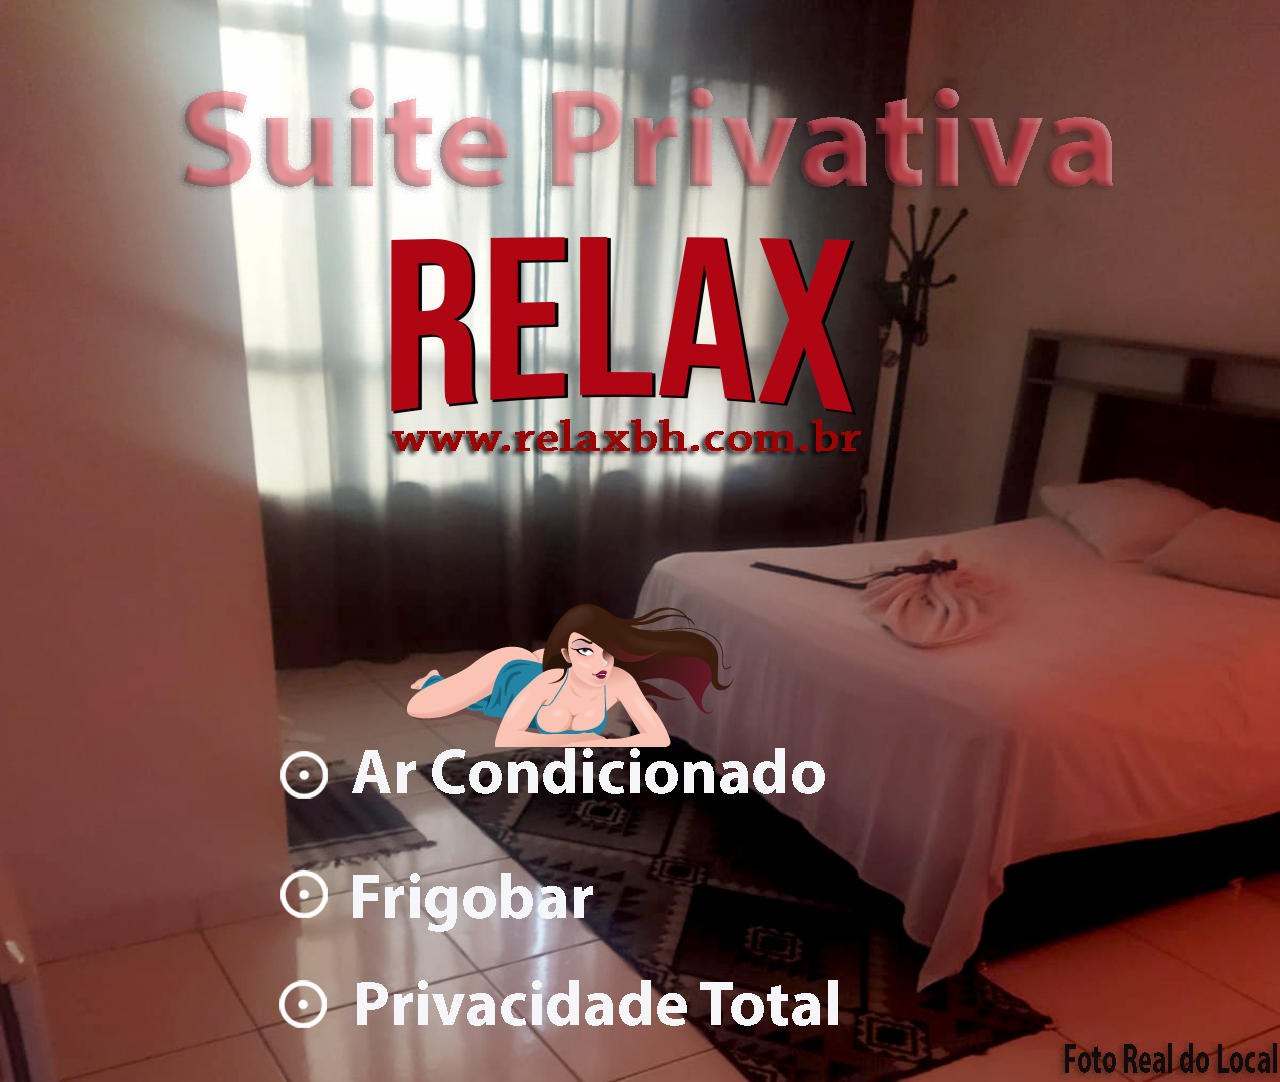 Quarto Principal - Clinica relax BH - Acompanhantes Belo Horizonte